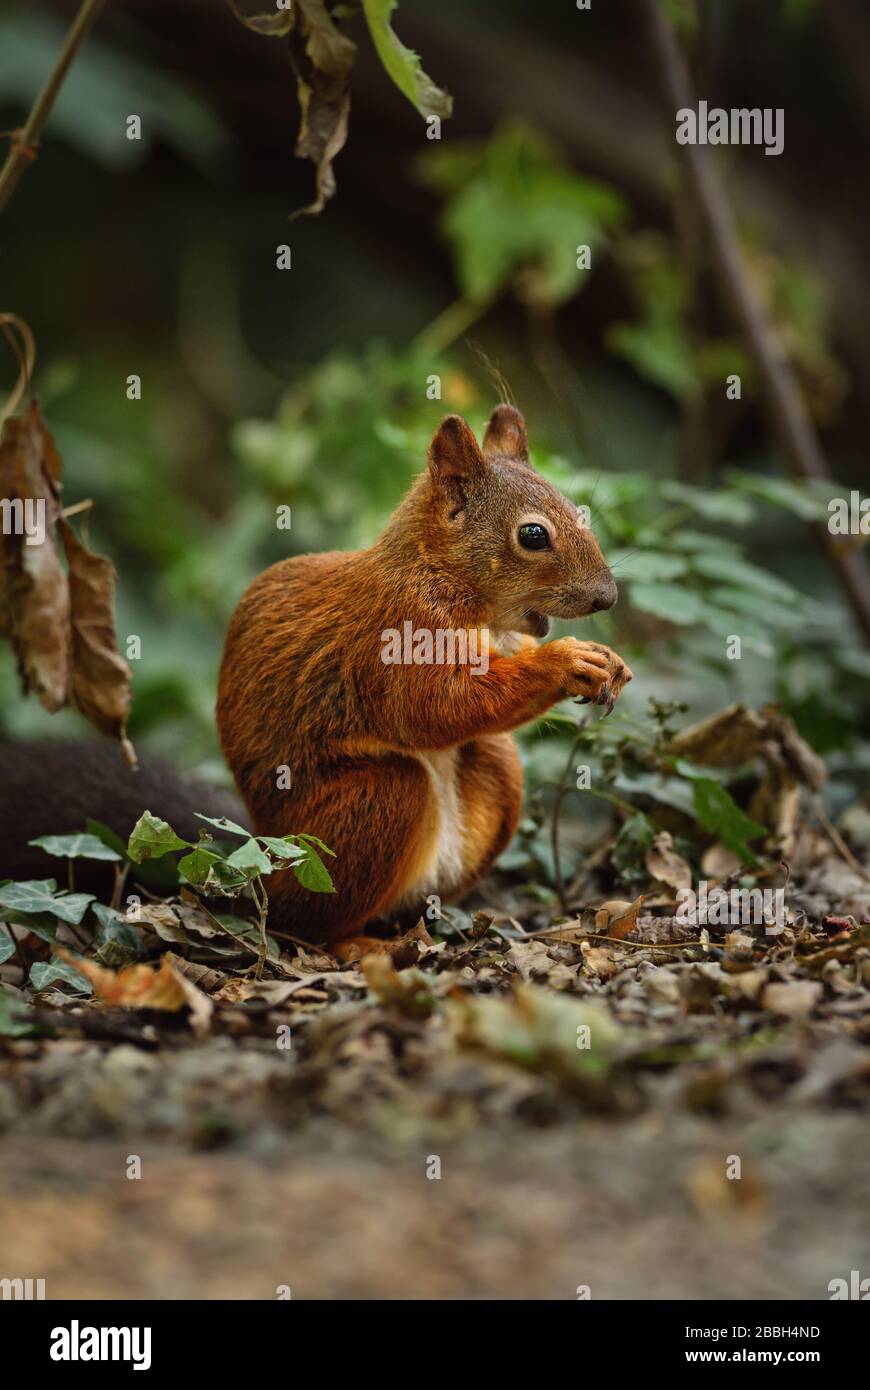 Eurasian scoiattolo rosso - Sciurus vulgaris, bella popolare piccolo mammifero da giardini europei e foreste, Hortobagy National Park, Ungheria. Foto Stock